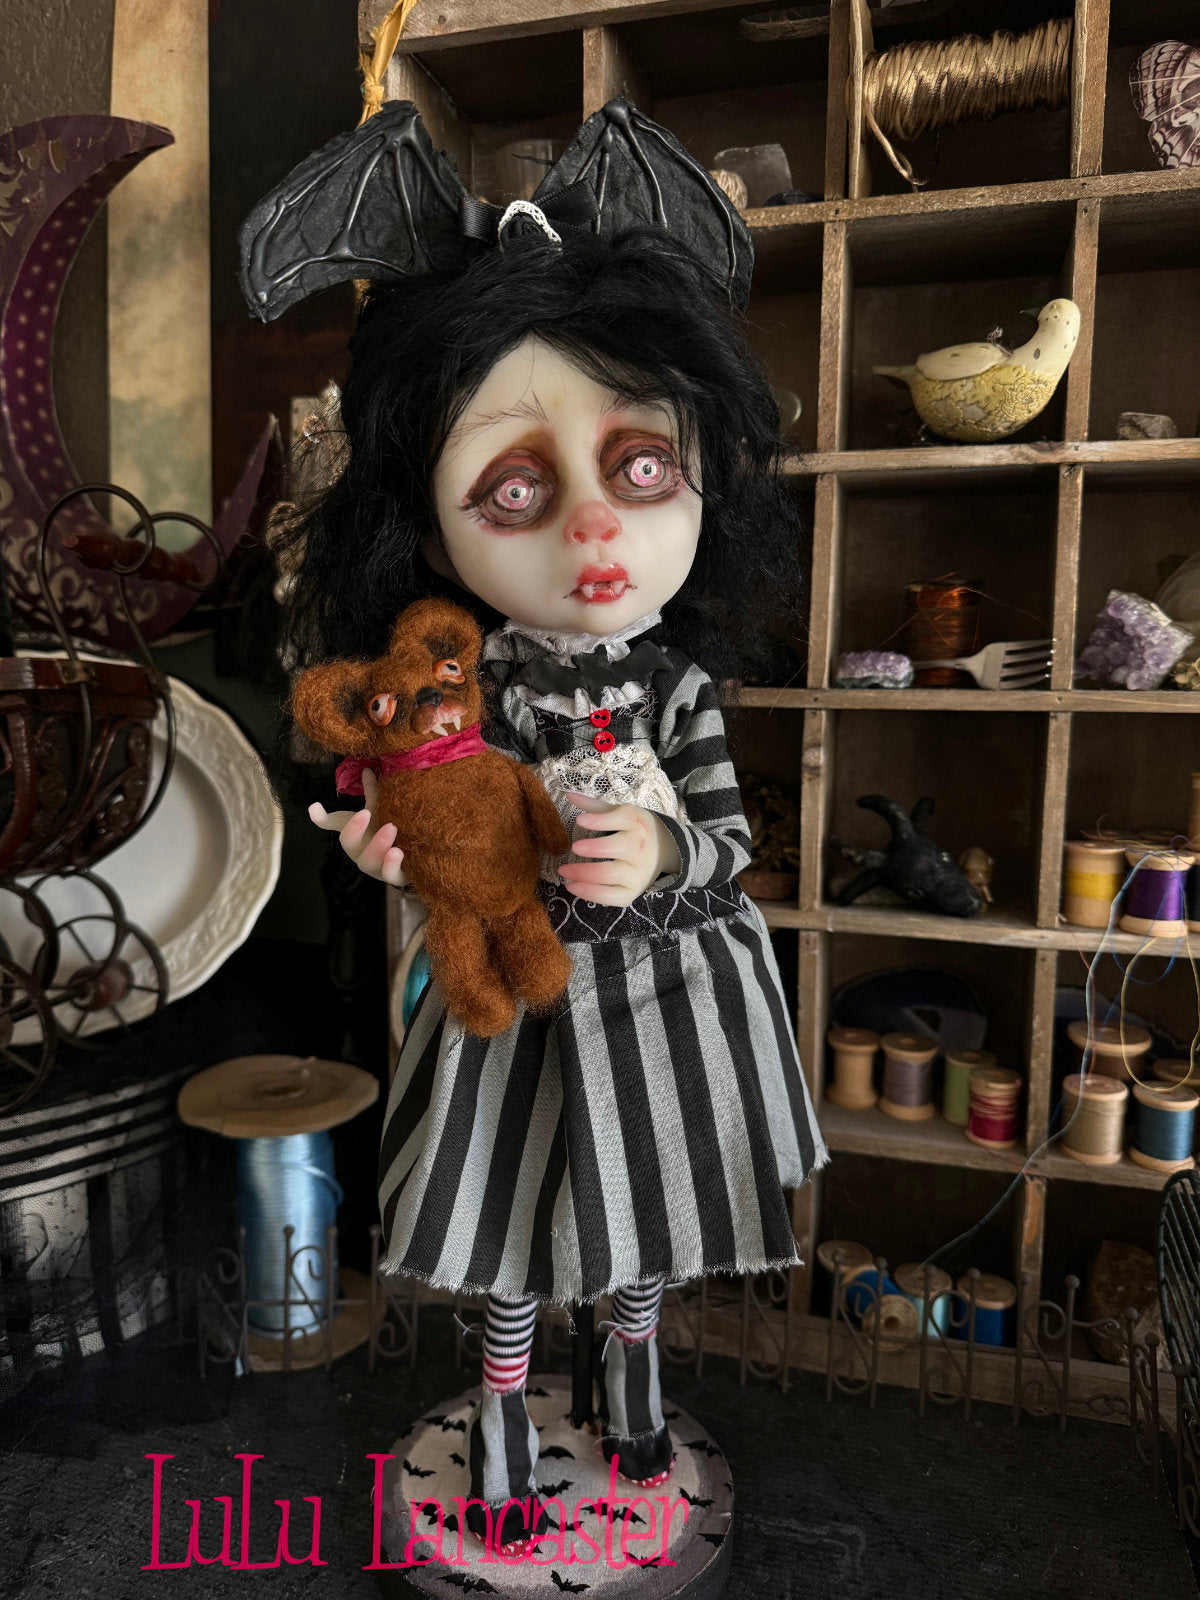 Dreary Darlene the Vampire Girl Original LuLu Lancaster Art Doll